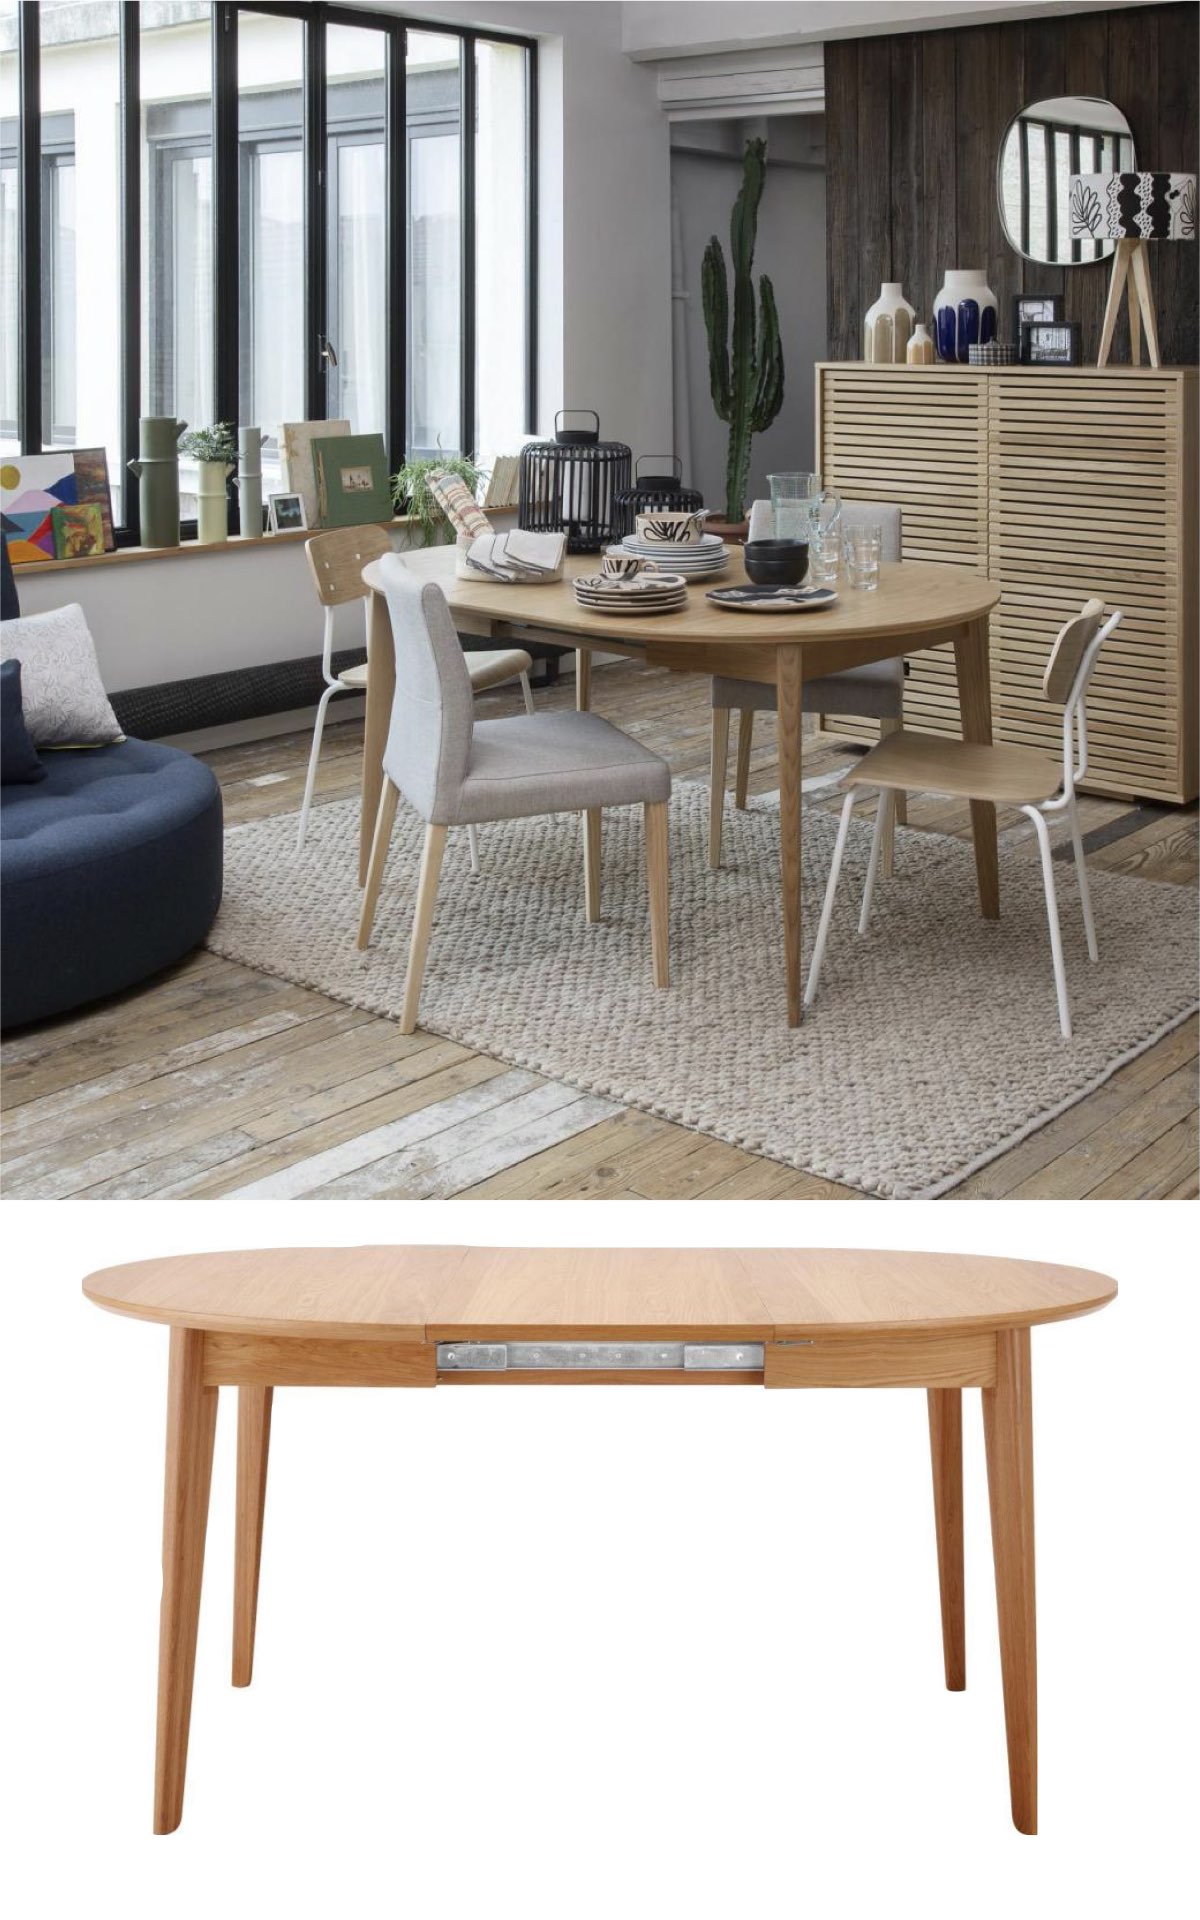 table ronde compact bois extensible rallonge integrée idéal studio petit espace